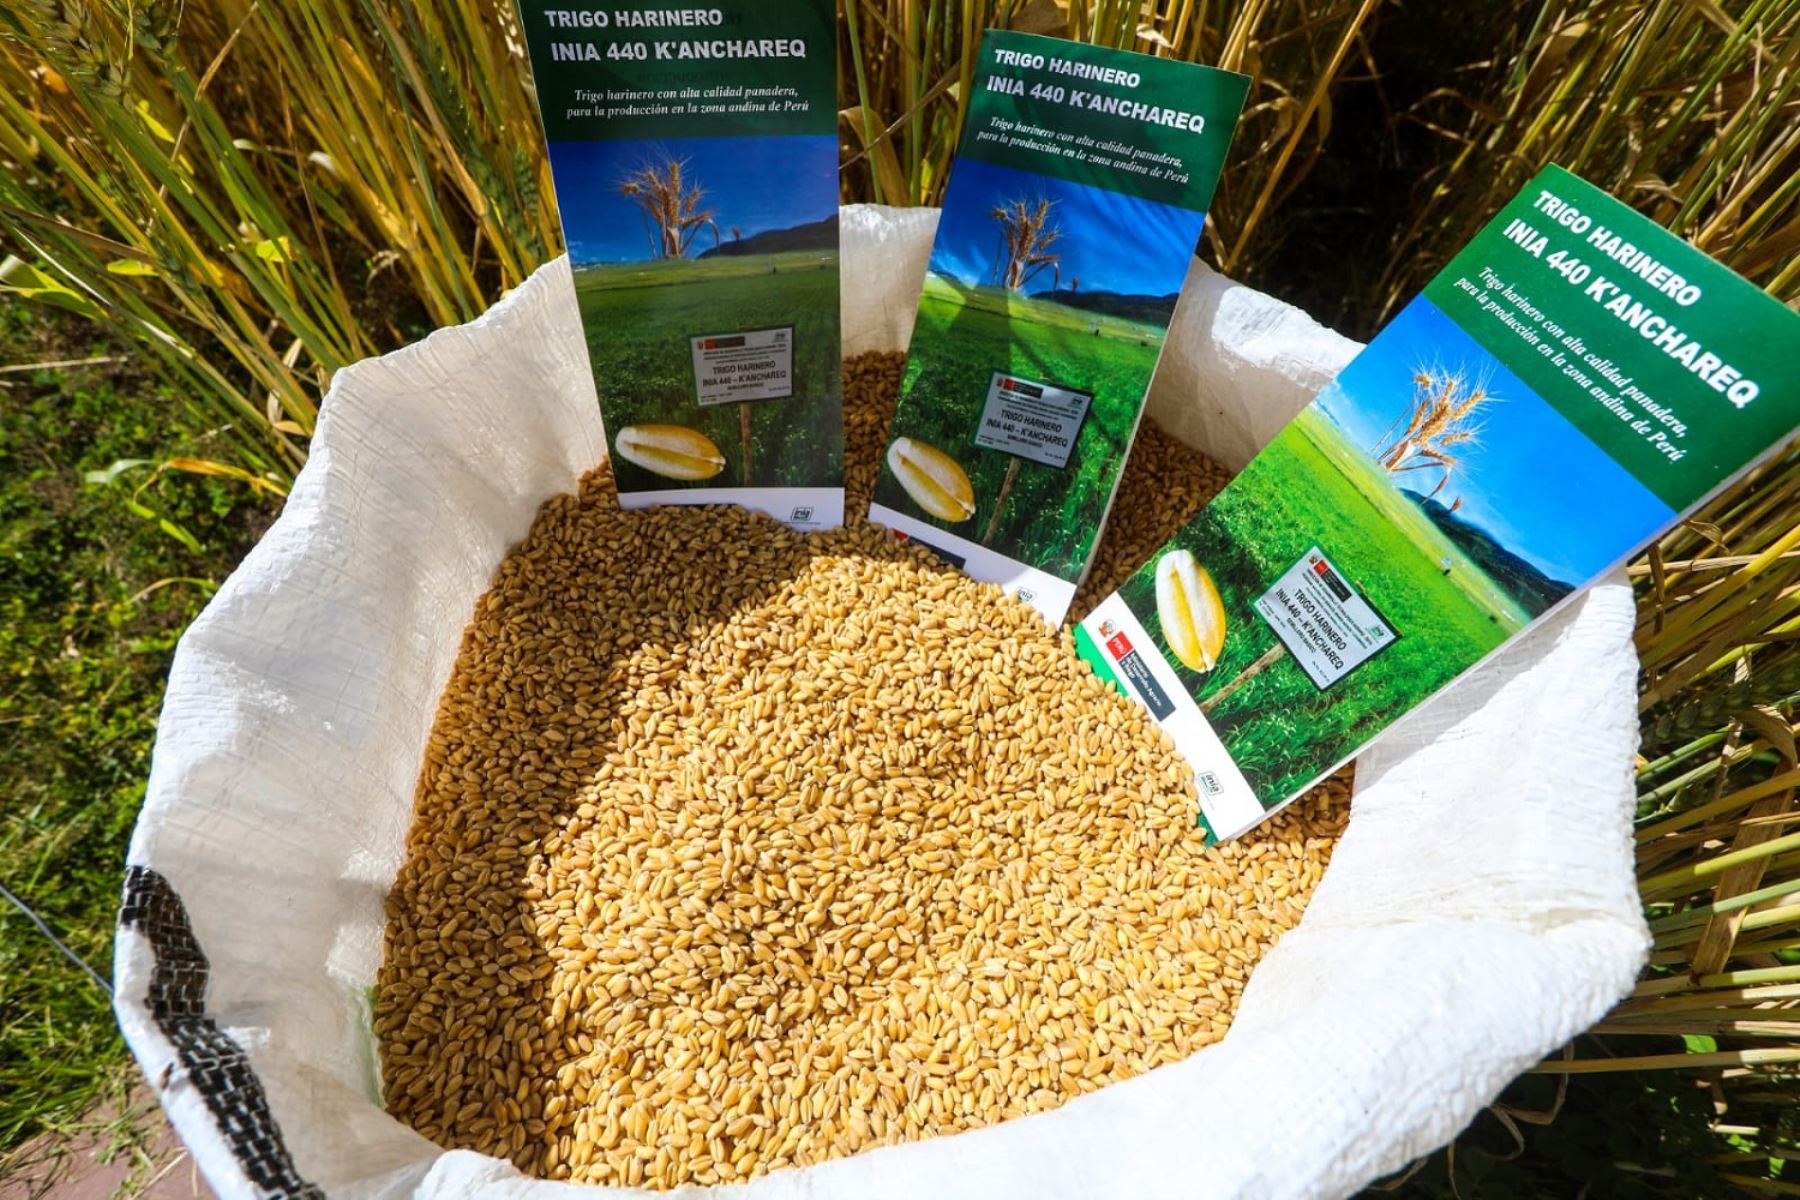 Tras 10 años de investigación nació el trigo harinero 440-Kanchared, resistente a enfermedades del cultivo y estrés hídrico. Foto: ANDINA/Midagri